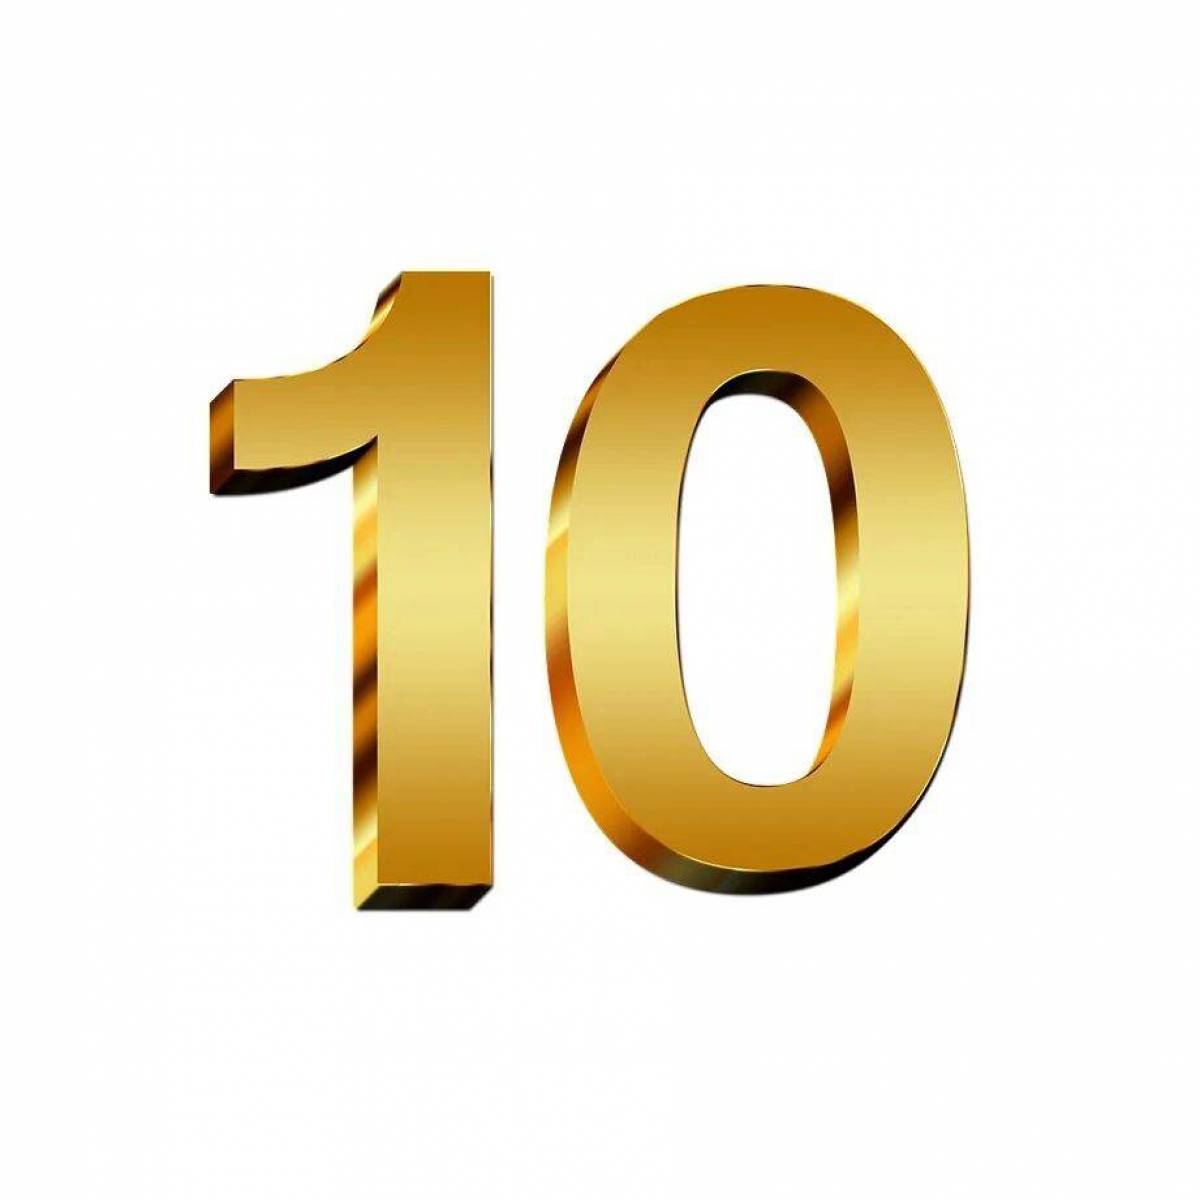 Цифра 10 для детей #15